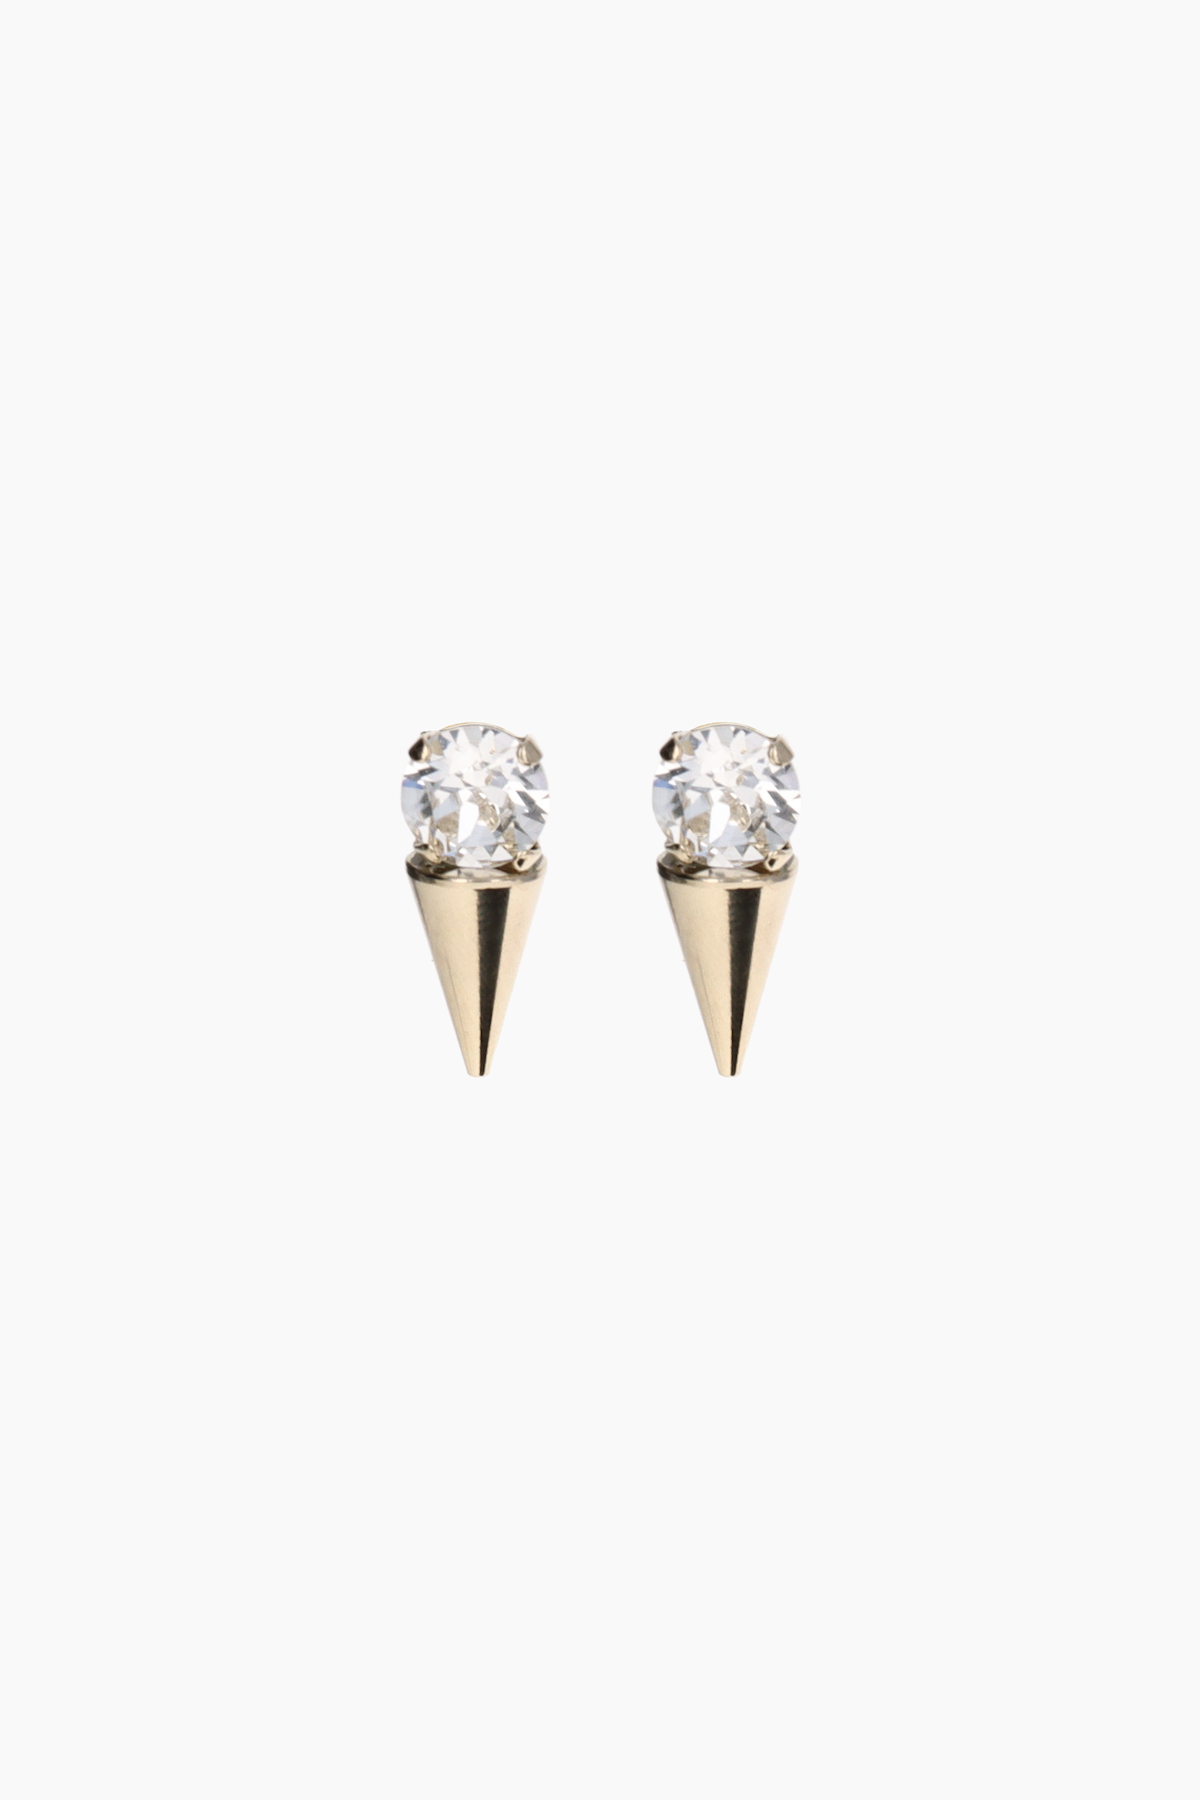 Casper gold earrings